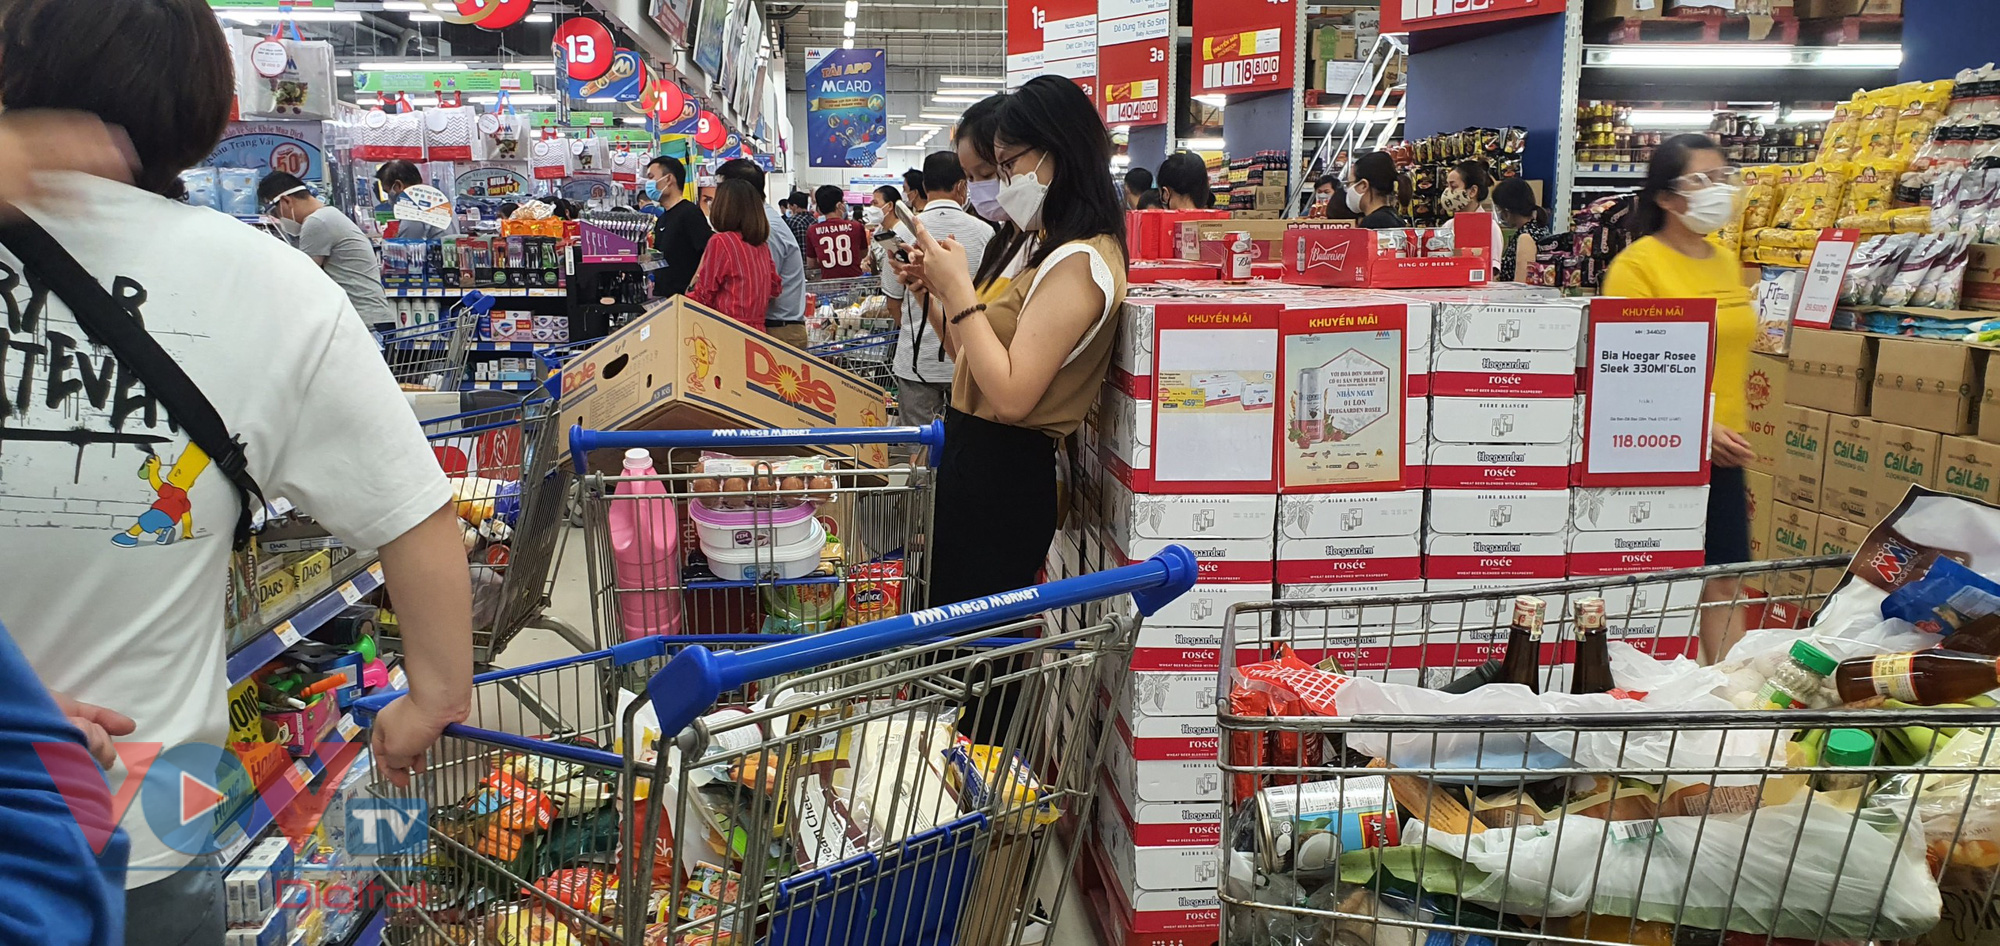 Chiều 30.7, sau khi Ban Thường vụ Thành ủy Đà Nẵng ban hành Nghị quyết, rất đông người dân đi siêu thị mua hàng.jpg